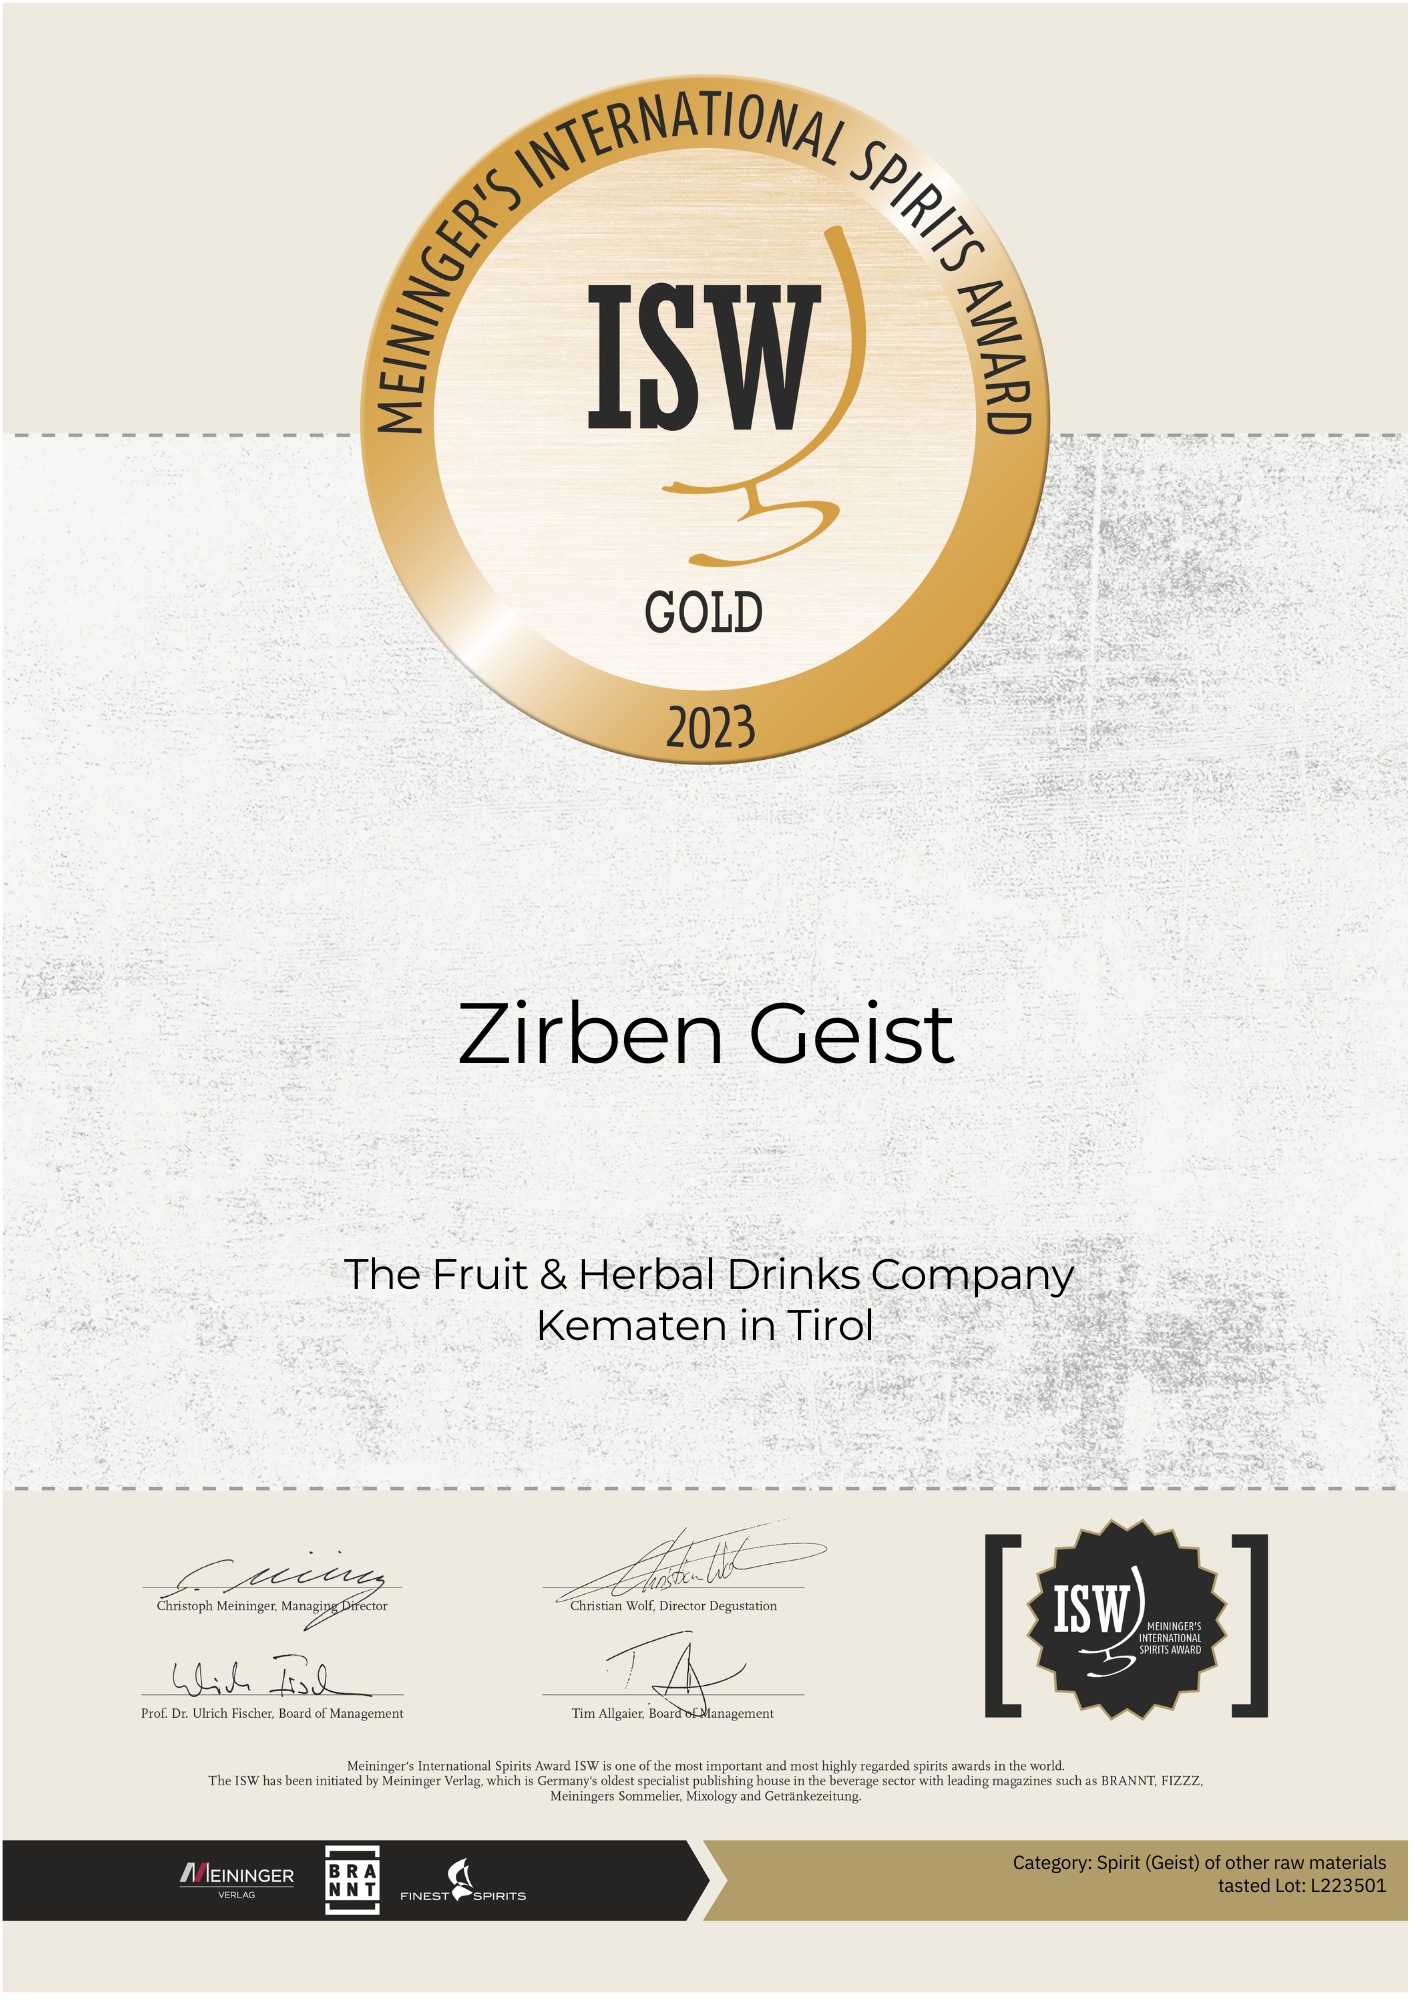 Certificate of award-winning Swiss Stone Pine Spirit from the Tiroler Kräuterdestillerie